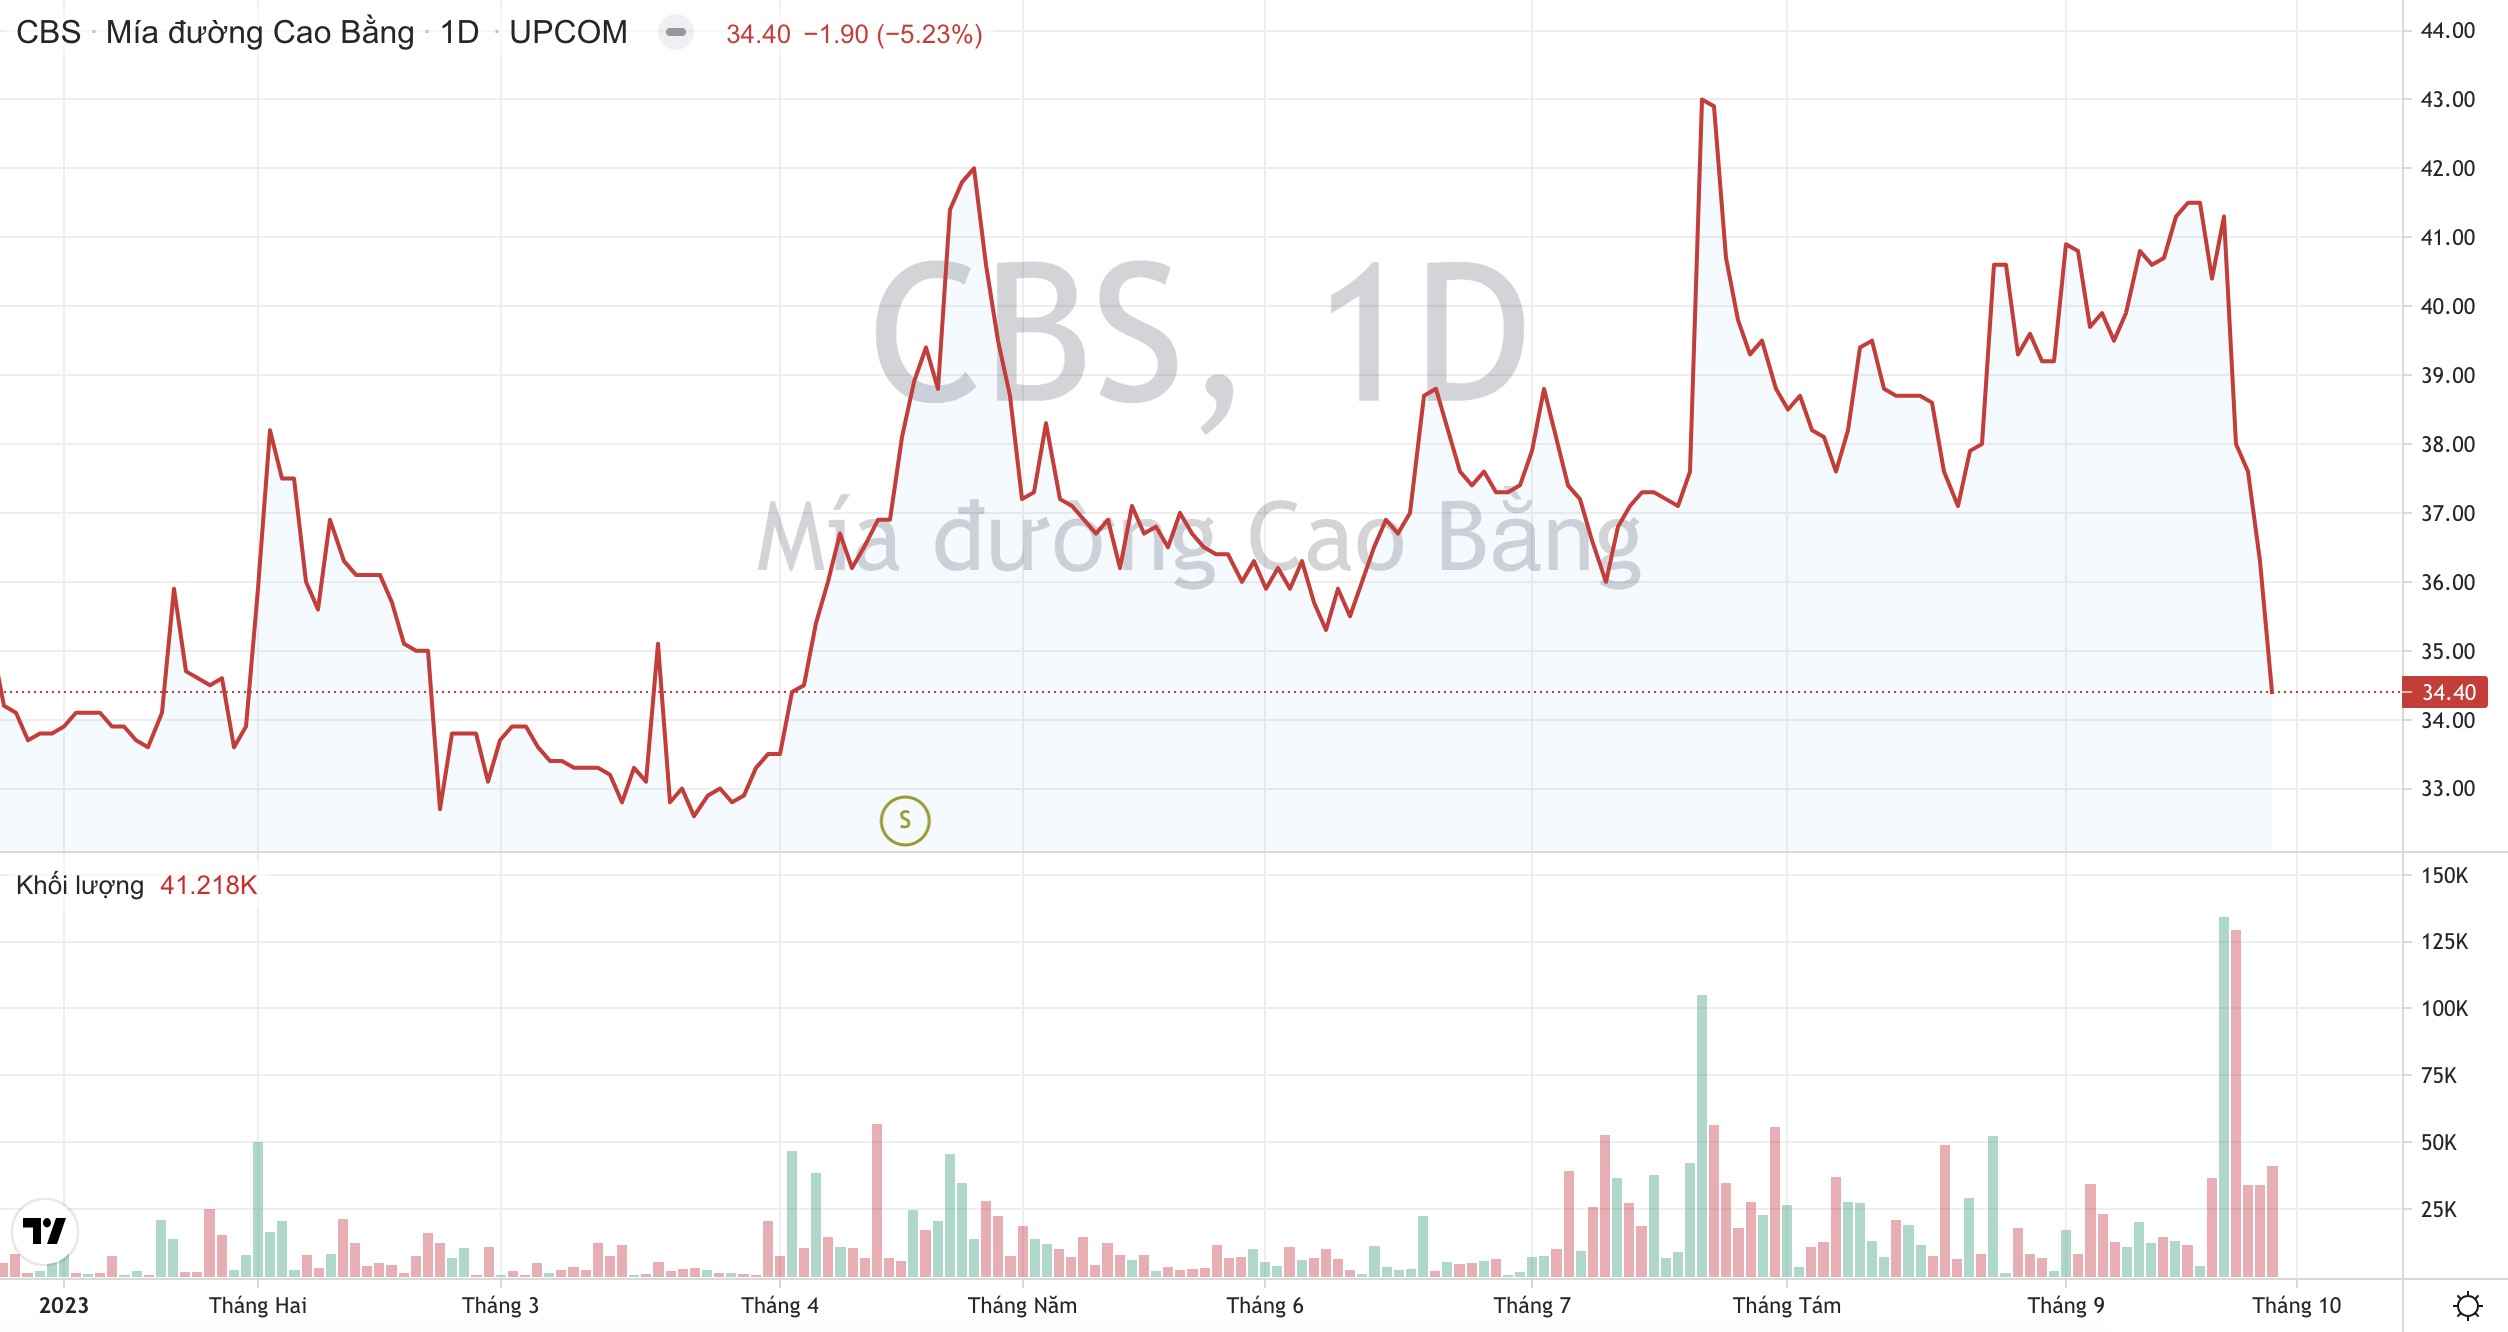 Giá cổ phiếu CBS Mía đường Cao Bằng